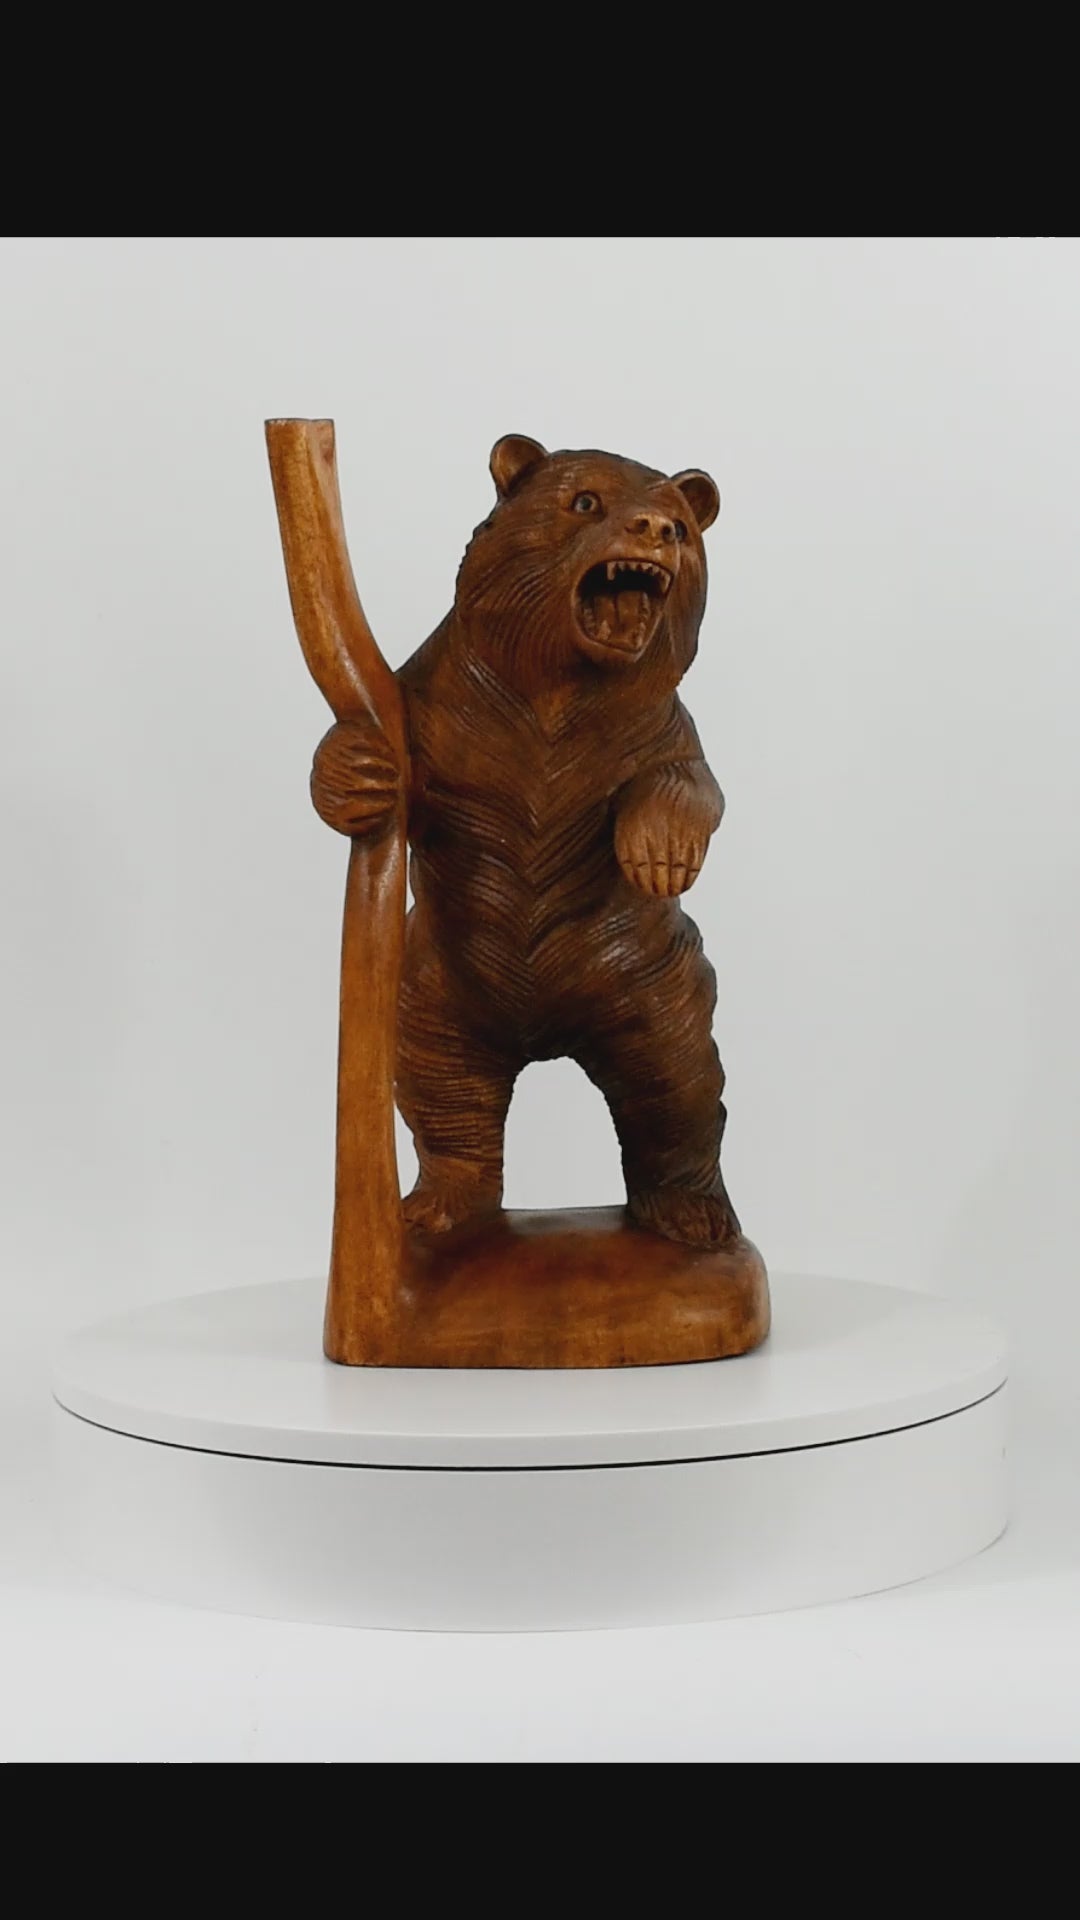 Figurine en bois grizzly détaillée de 15,2 cm sur socle - 172381 –  Specialty Decor by Sunland Home